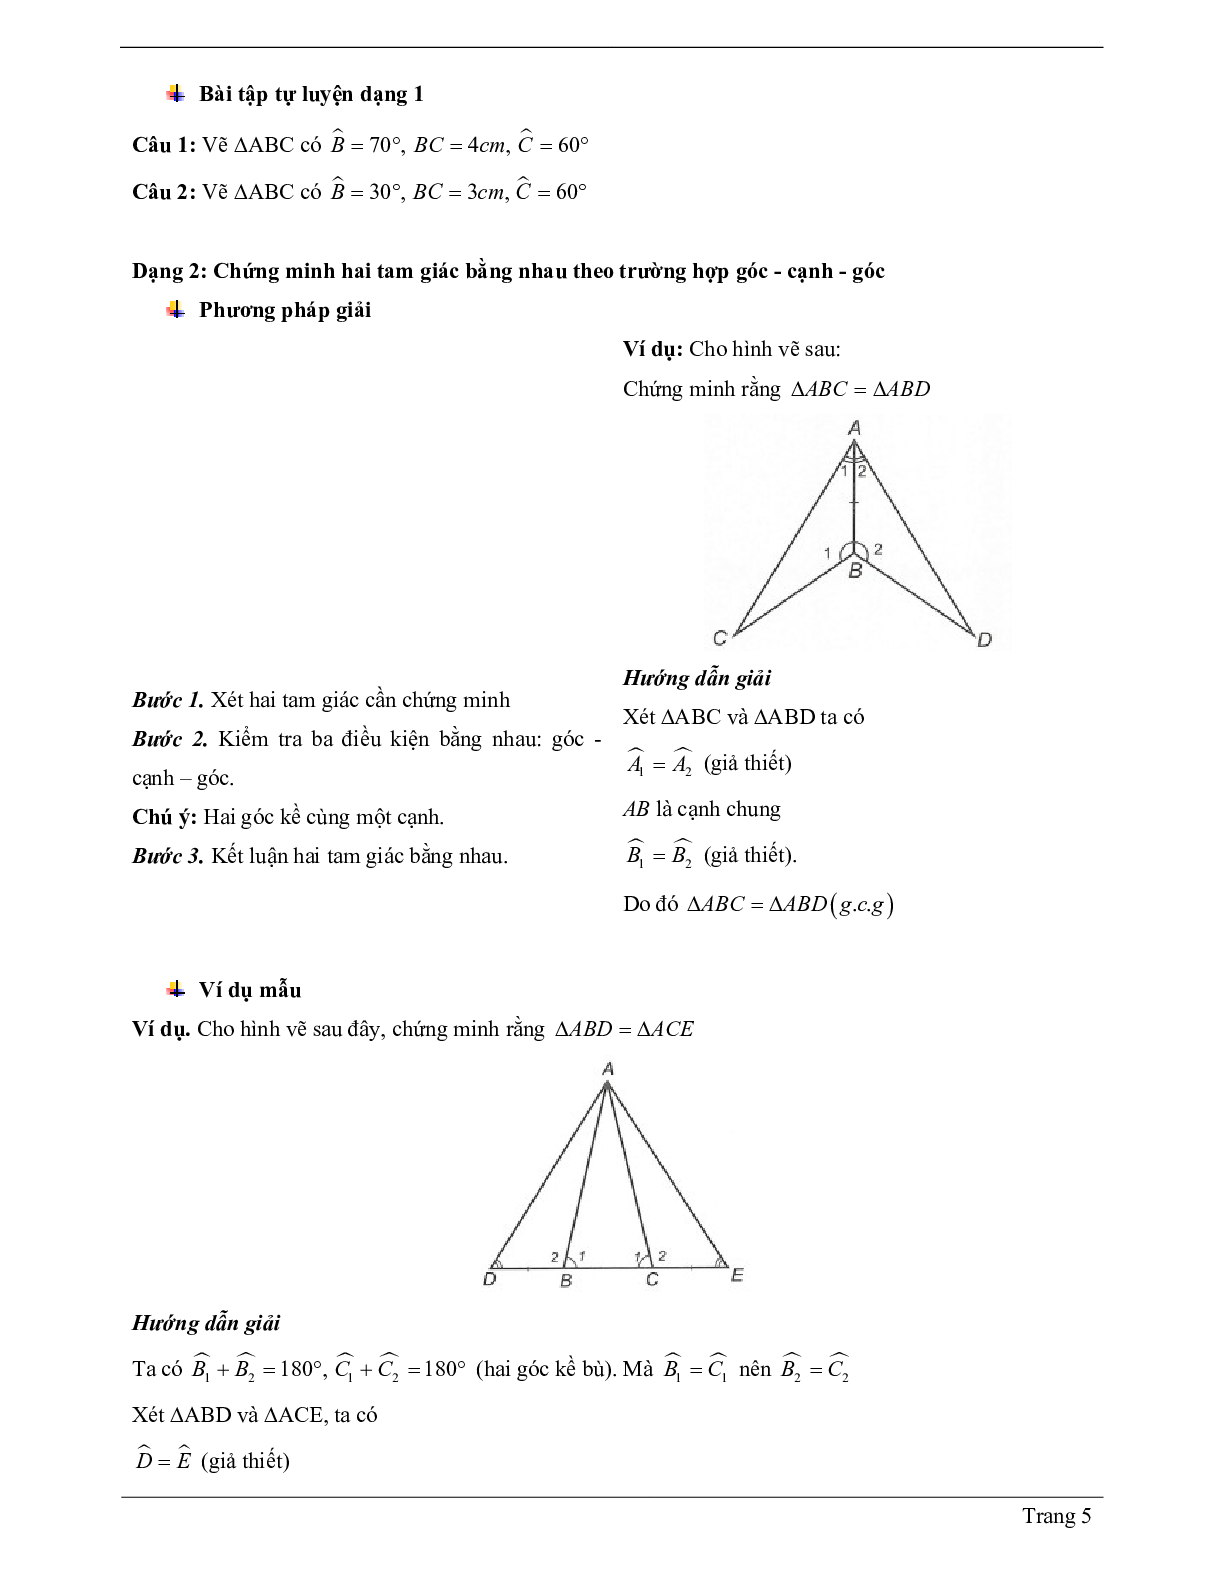 Lý thuyết Toán 7 có đáp án: Trường hợp bằng nhau thứ ba của tam giác: góc - cạnh - góc (g.c.g) (trang 5)